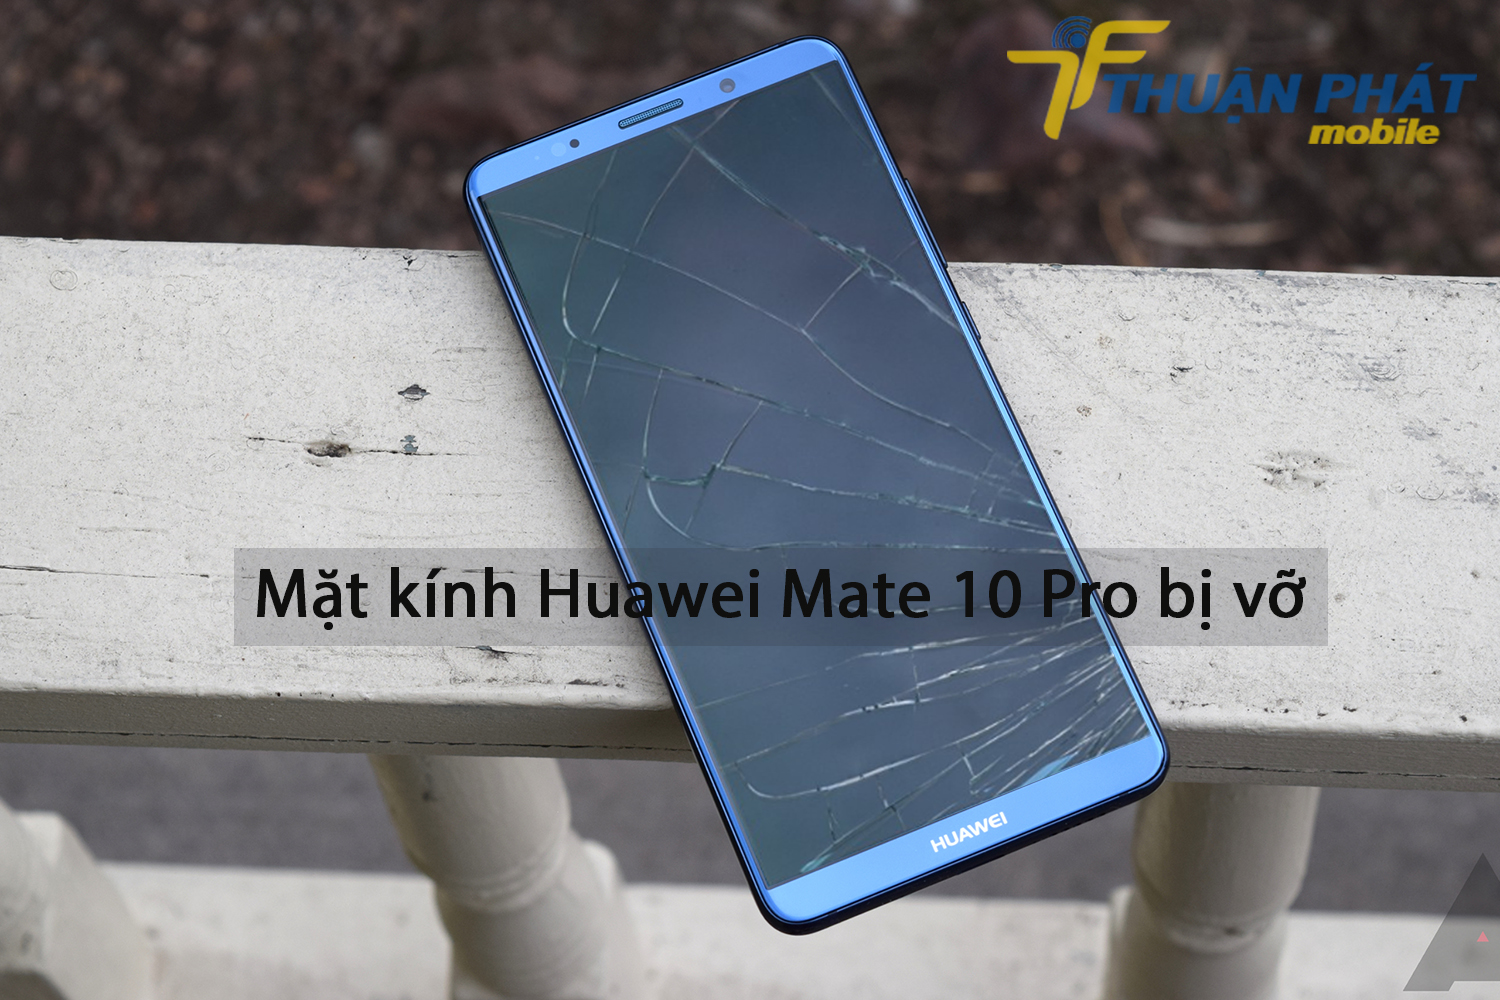 Mặt kính Huawei Mate 10 Pro bị vỡ